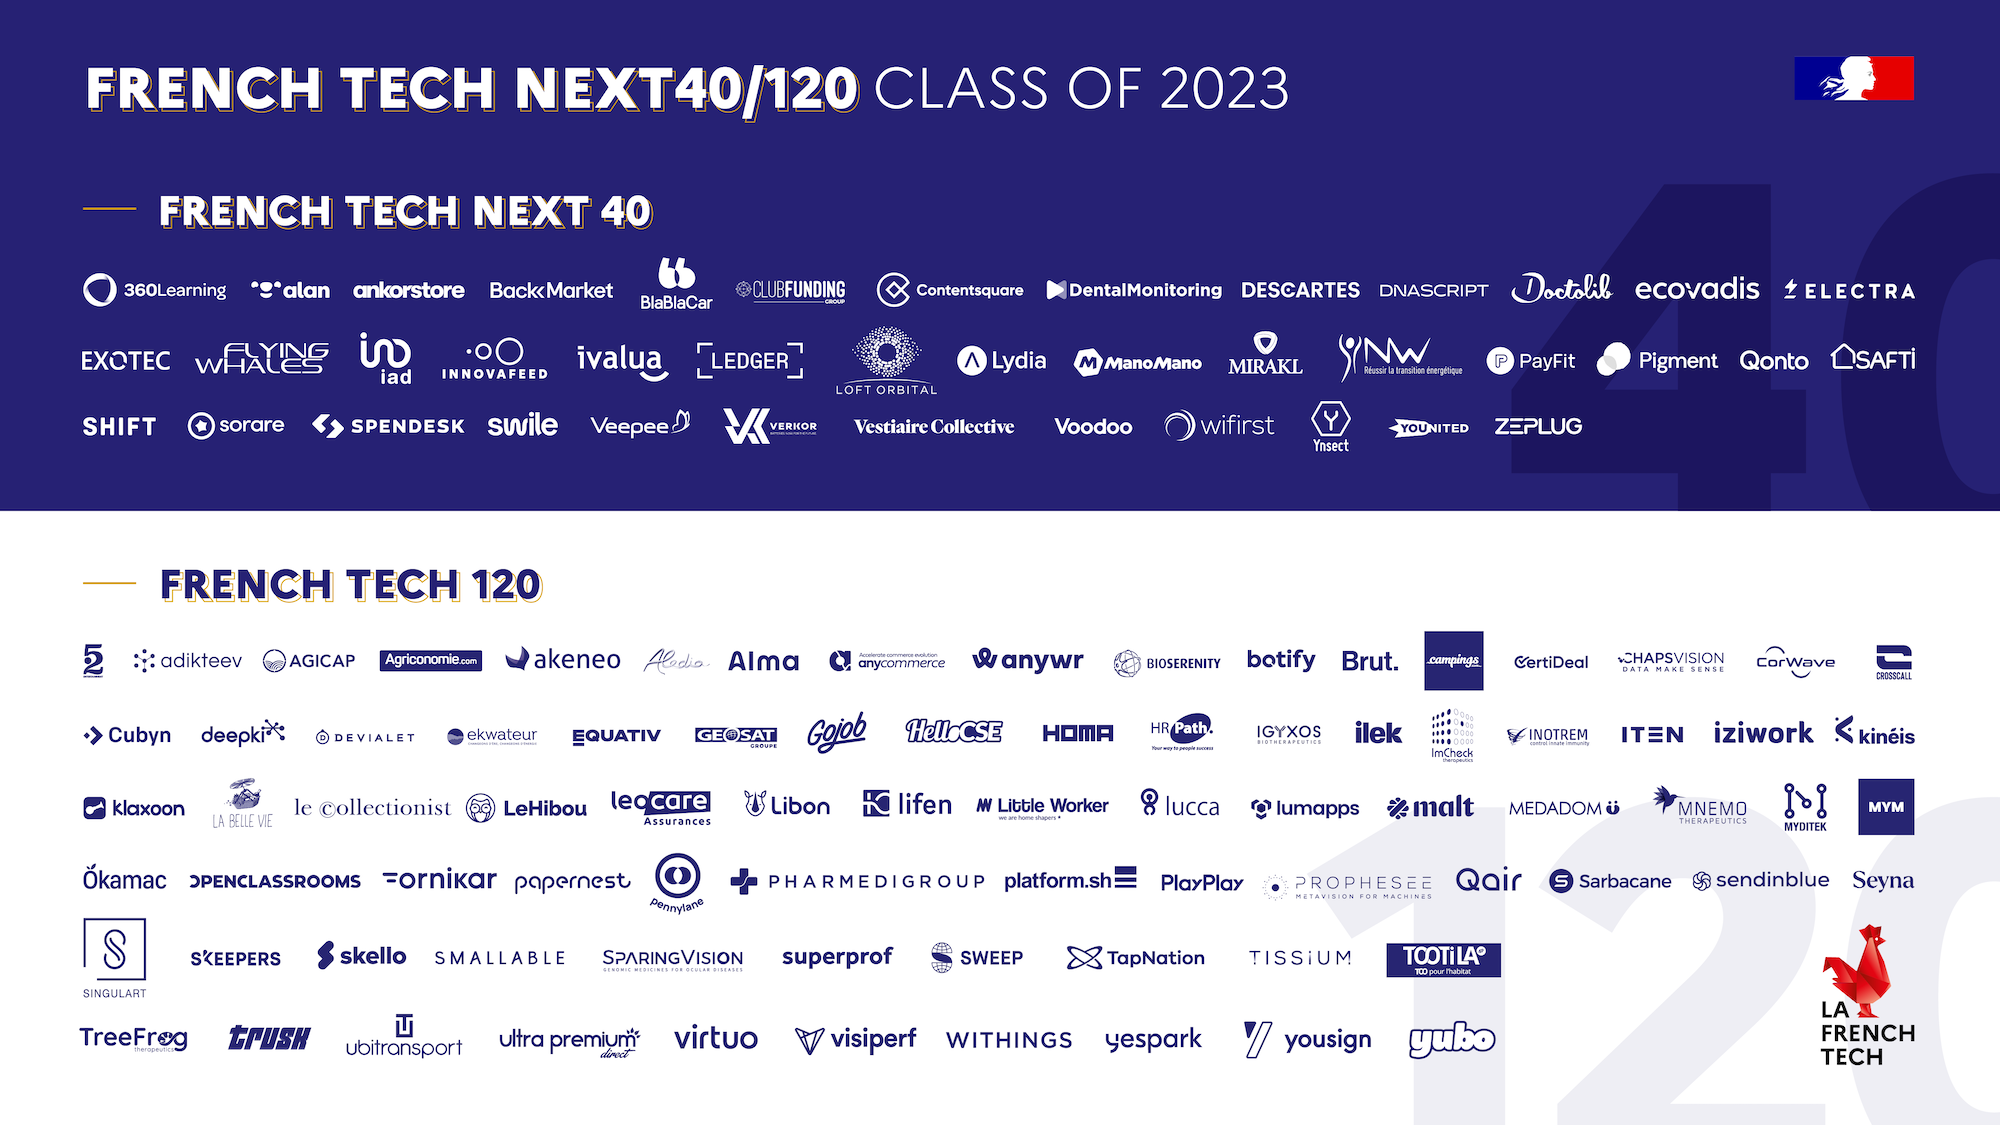 20230219_French-Tech-Next40_120_2023_EN